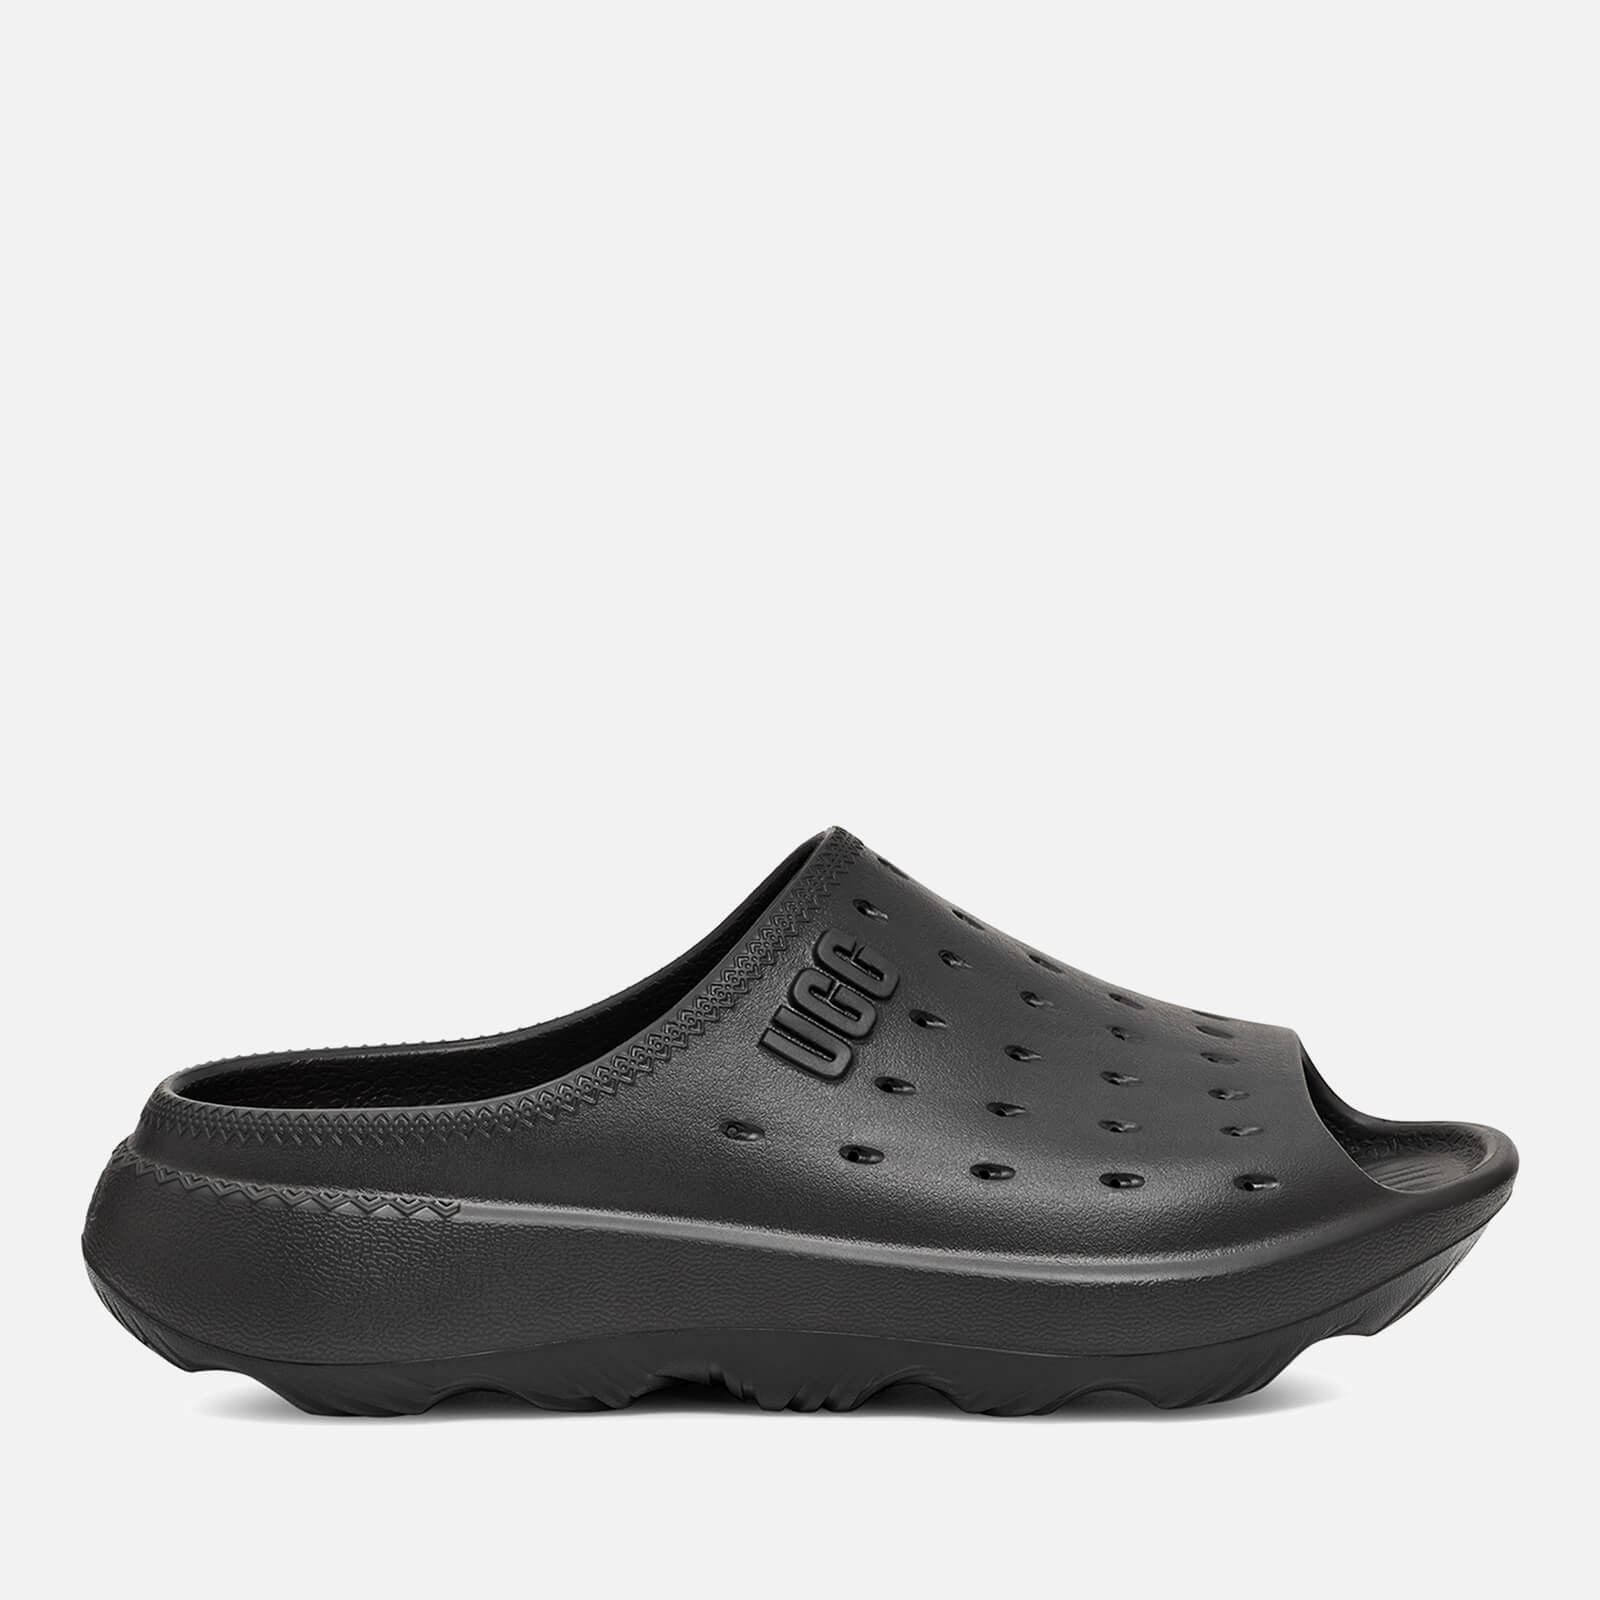 UGG Men’s Slide It EVA Sandals